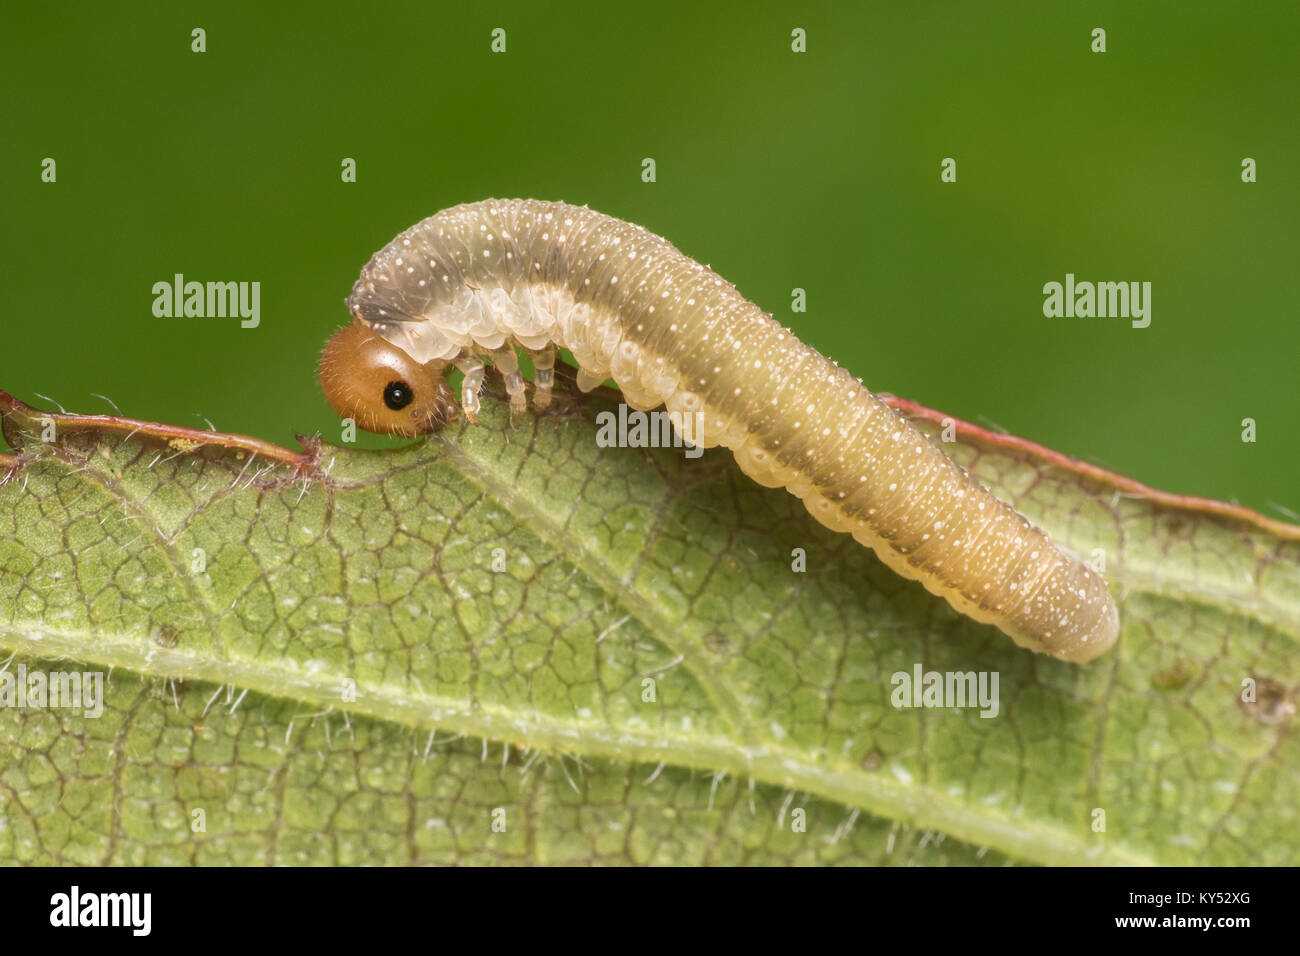 Sawfly caterpillar Fütterung auf ein dornbusch Blatt. Cahir, Tipperary, Irland. Stockfoto